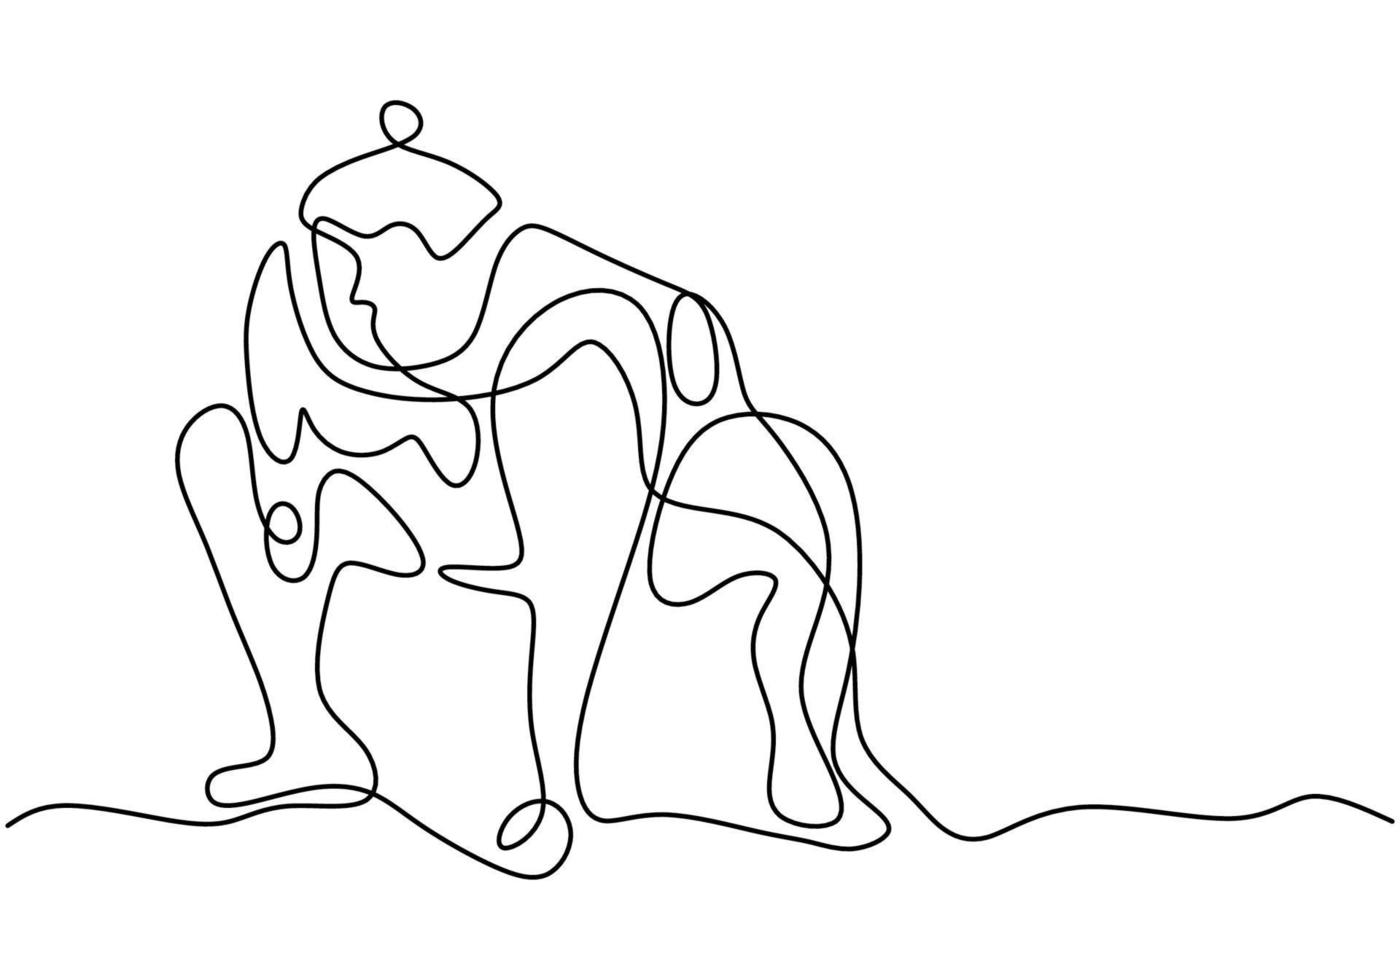 único desenho de linha contínua de jovem grande gordo japonês sumô é pose no centro de ginásio de arena isolado no fundo branco. conceito tradicional de arte marcial do festival. design de minimalismo vetorial vetor